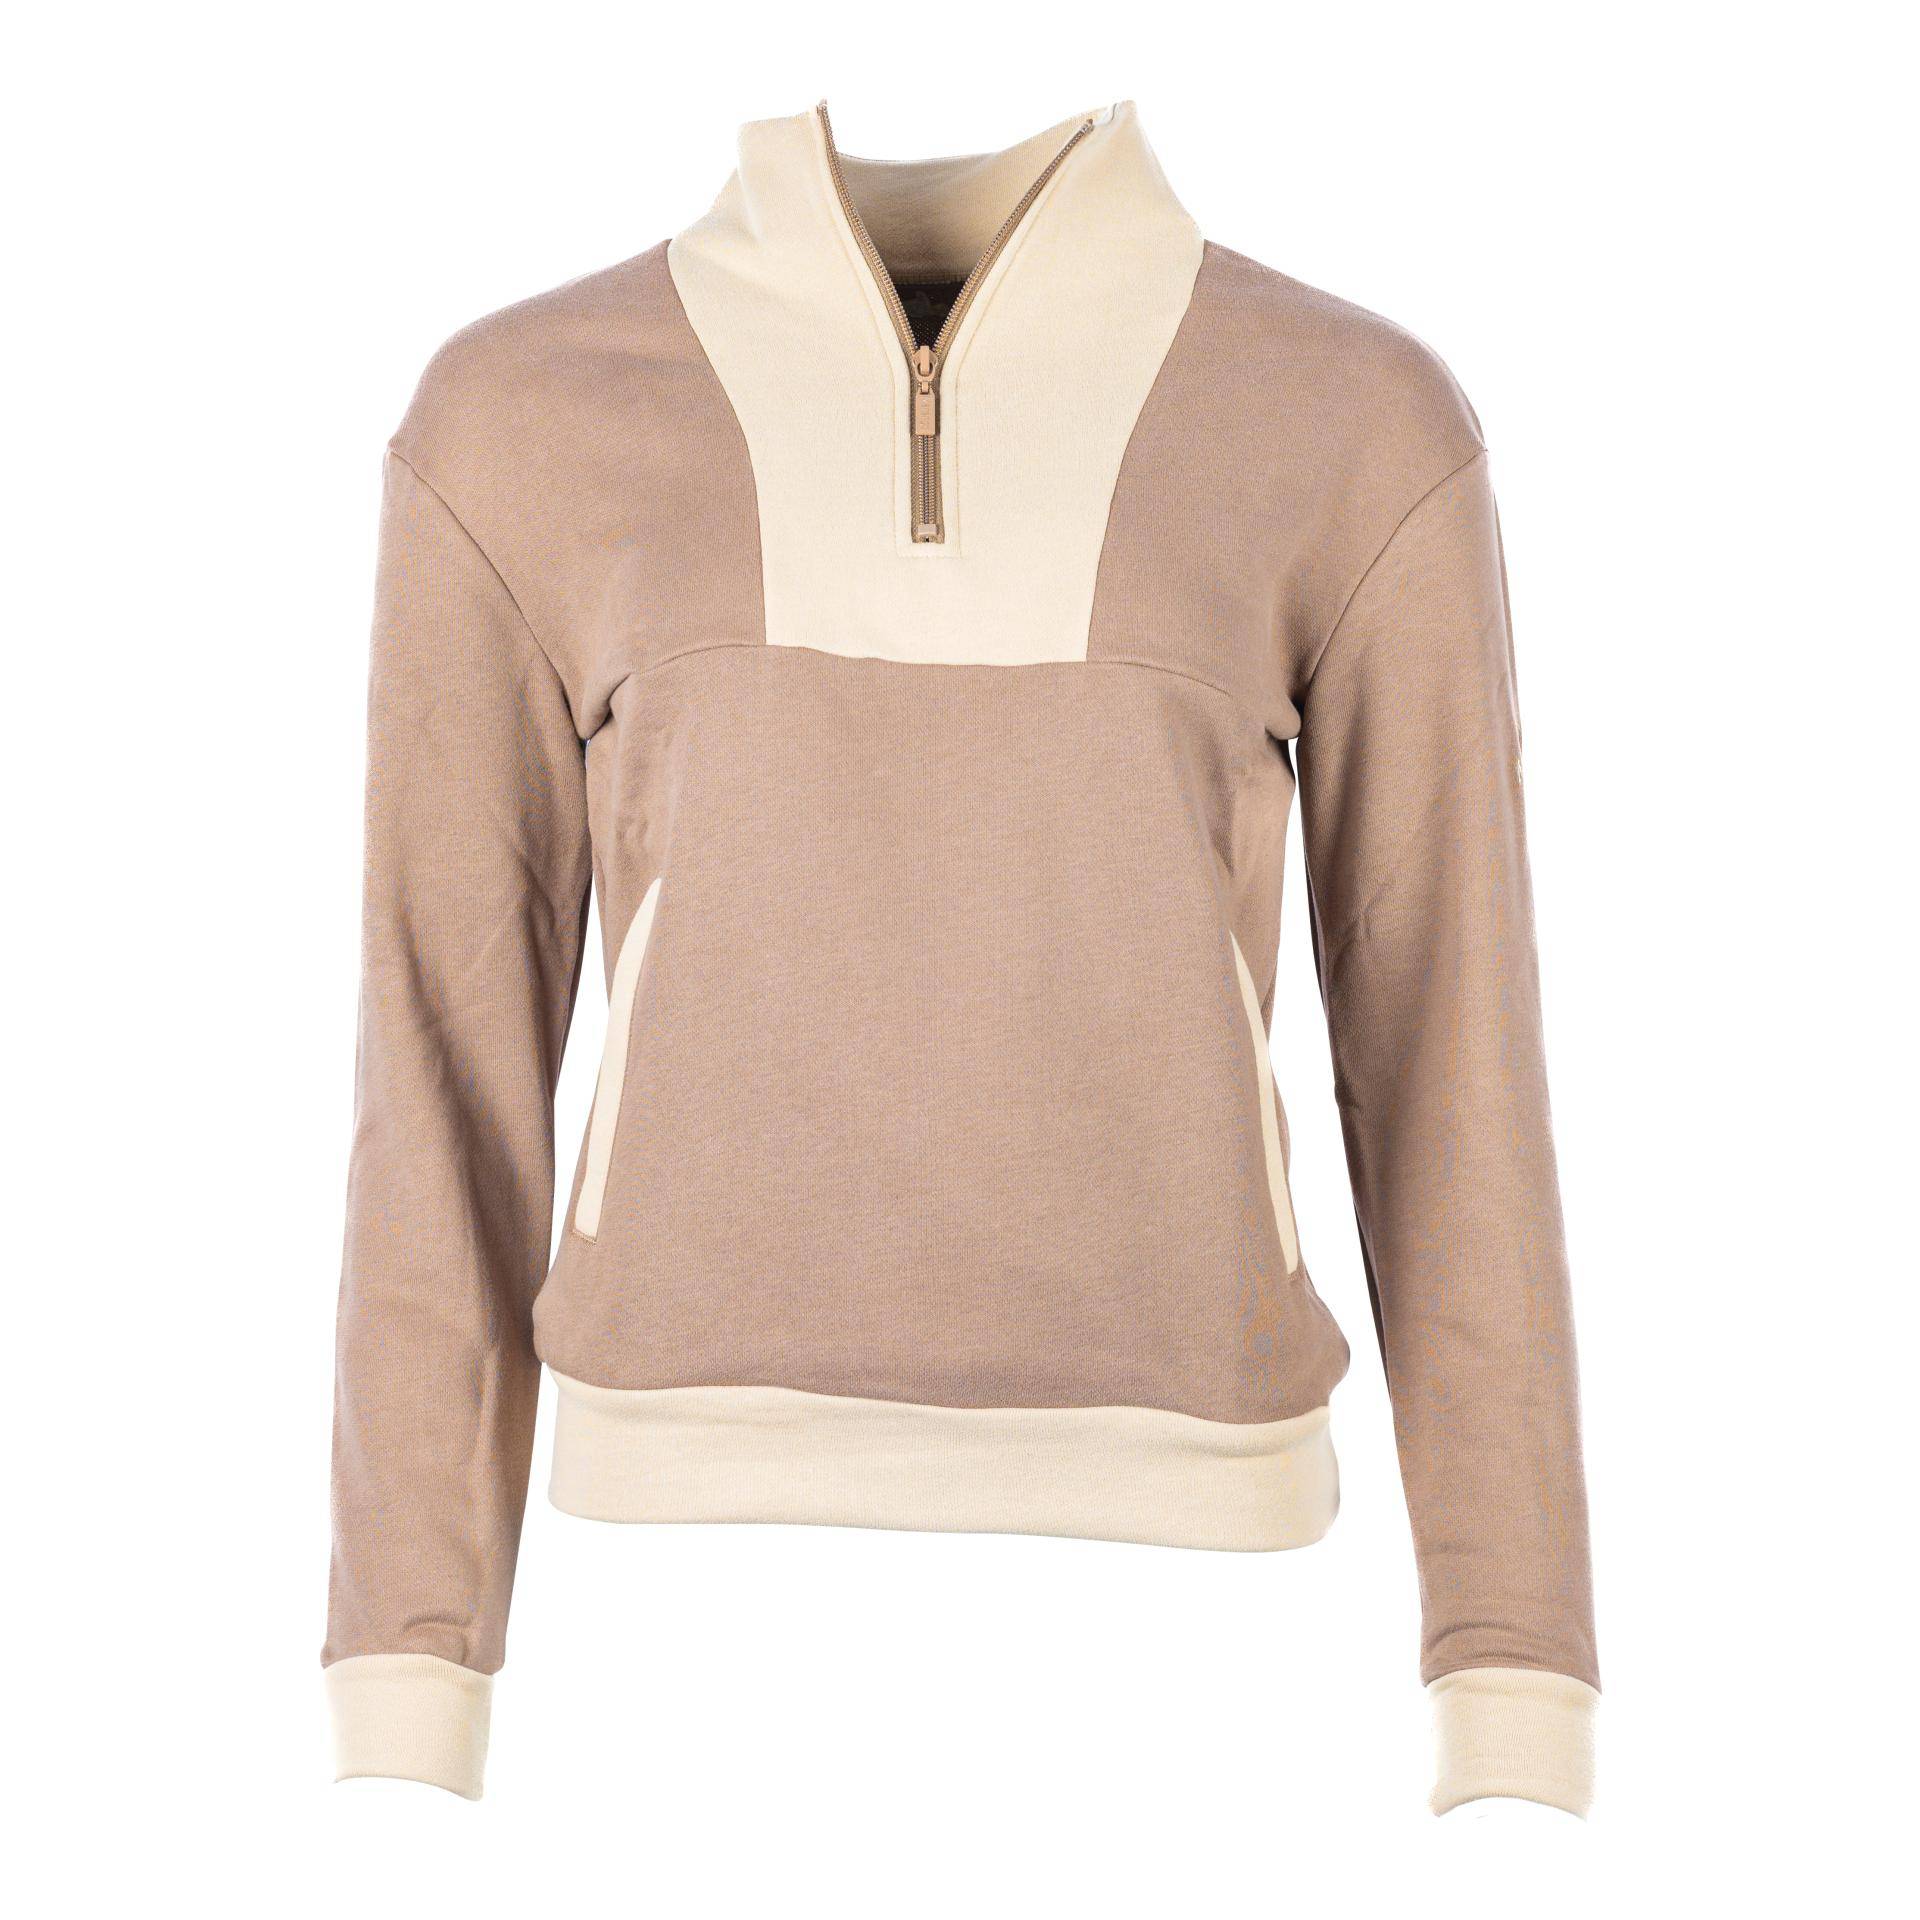 Marengo Zip Sweatshirt Elements Grösse Pullover: M, Farbe: Wood Brown von Marengo